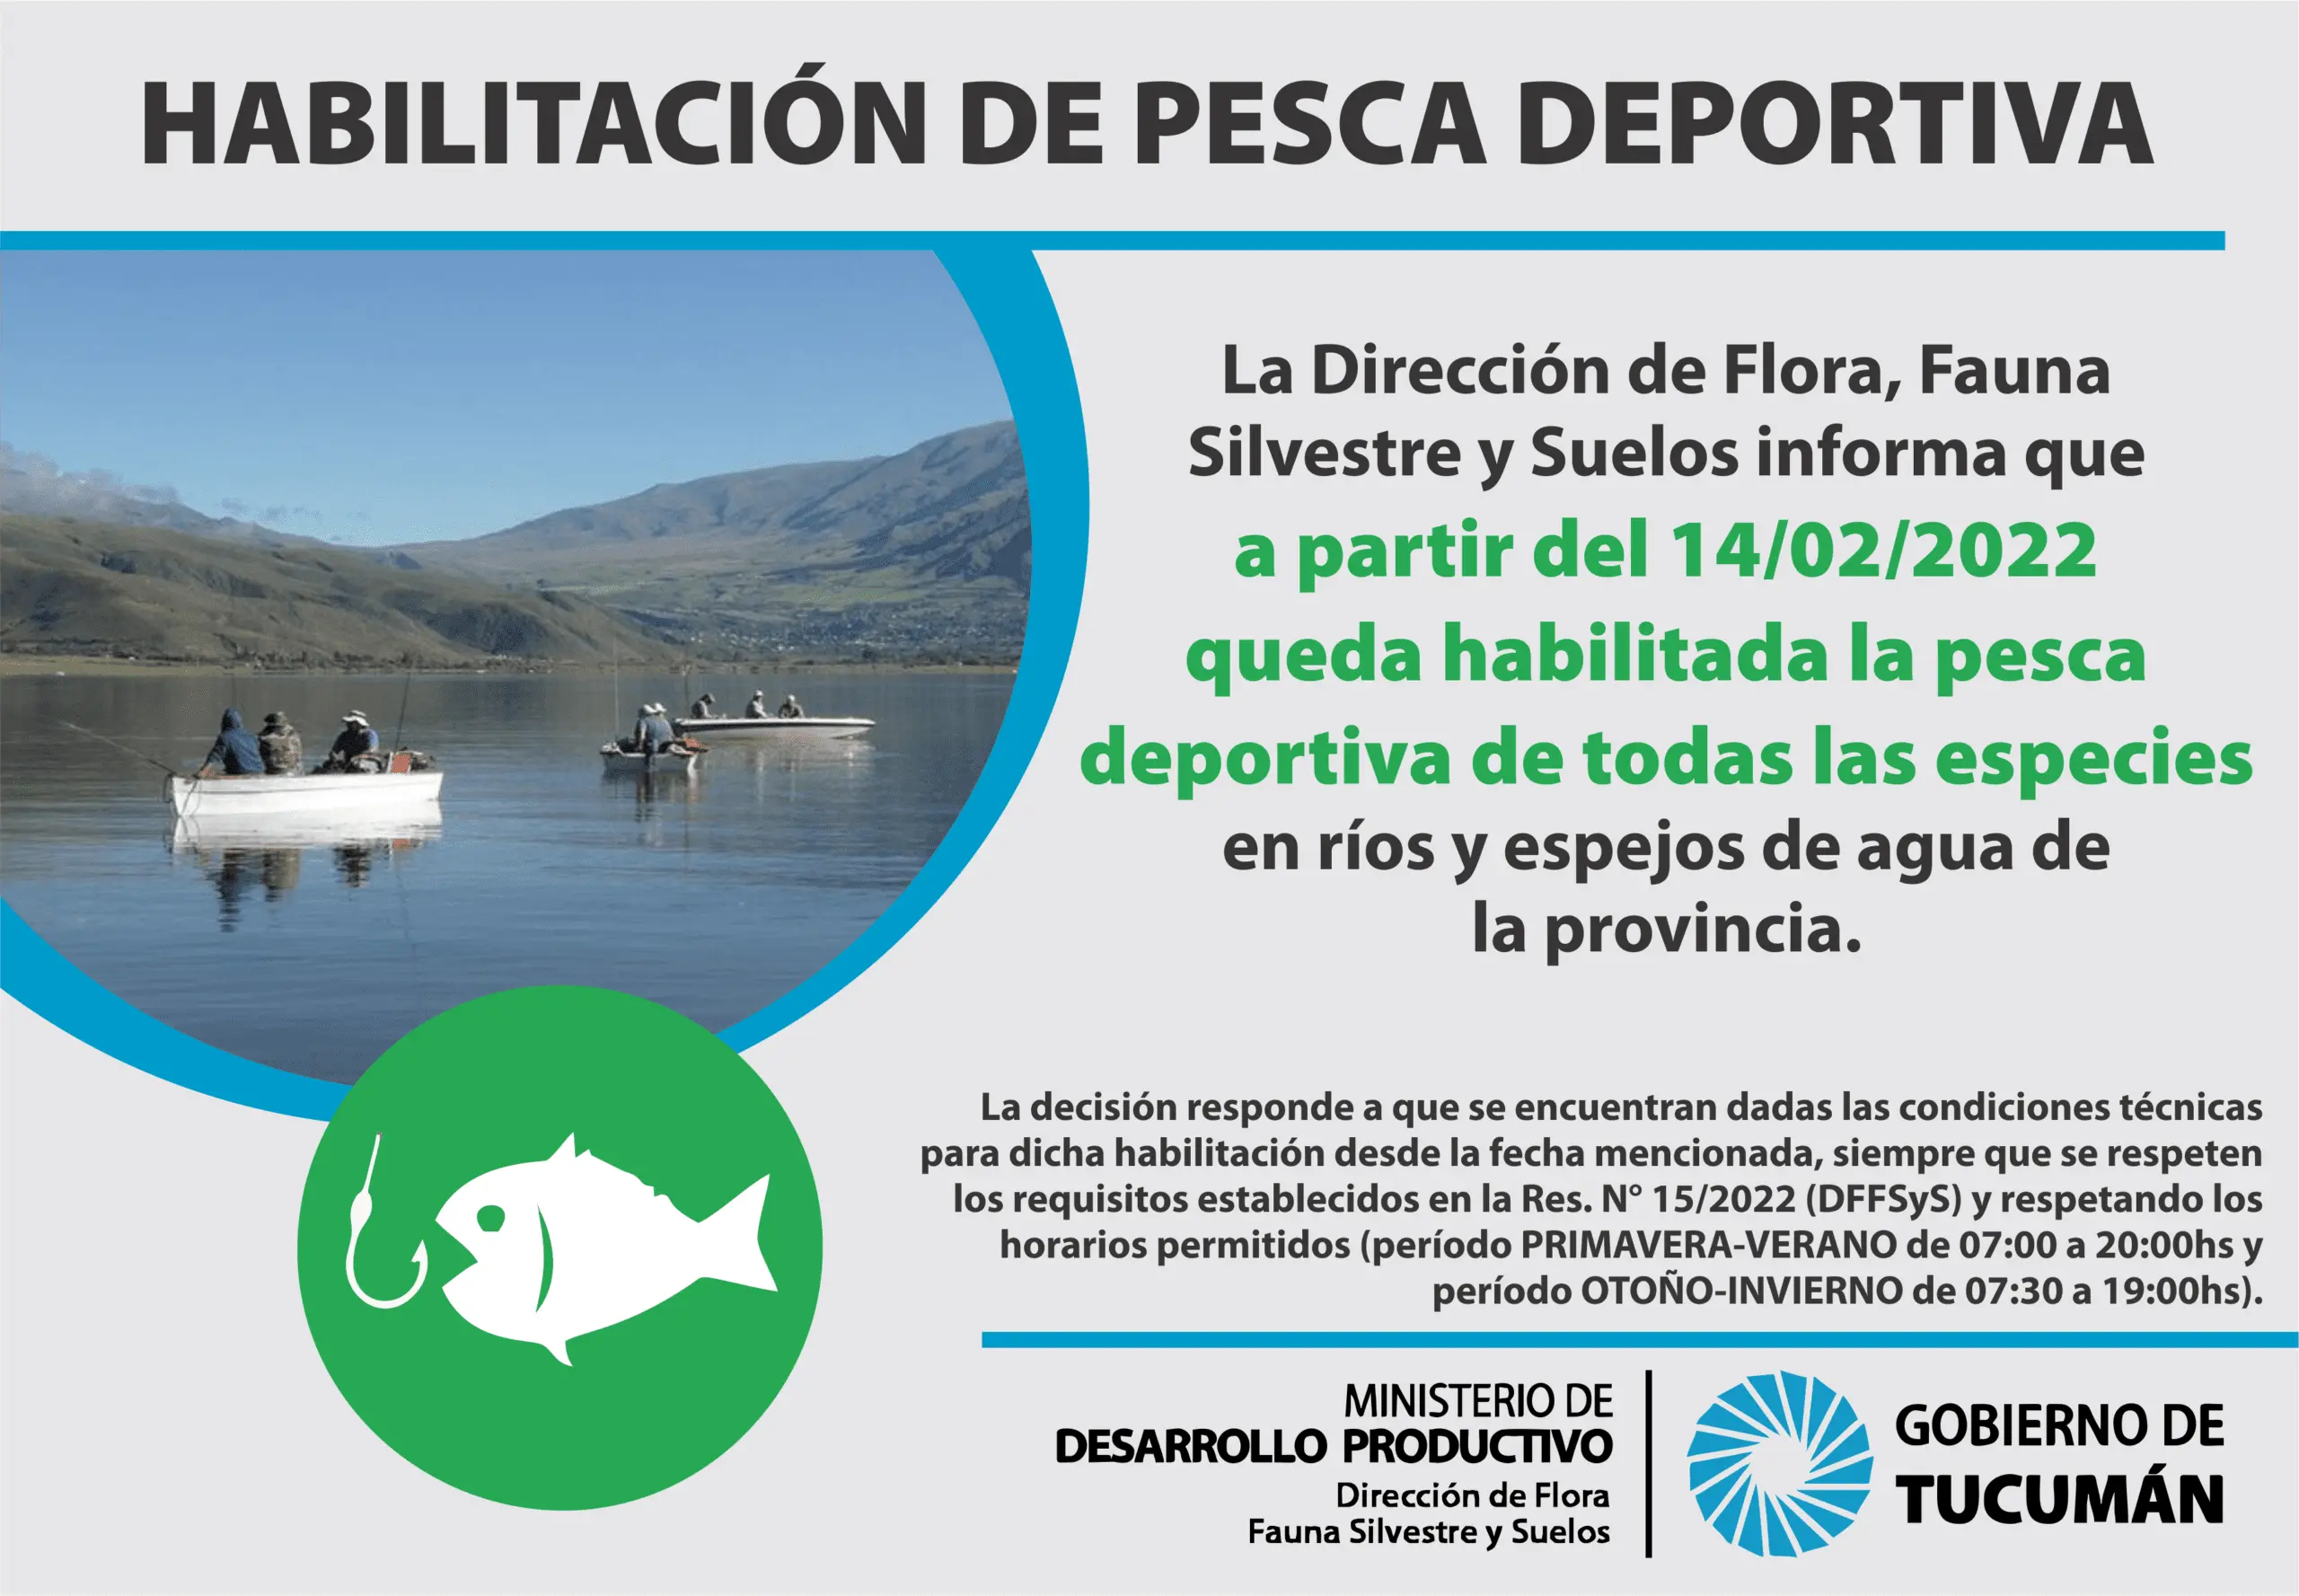 carnet de pesca tucuman - Cuándo se habilita la pesca en Tucumán 2023